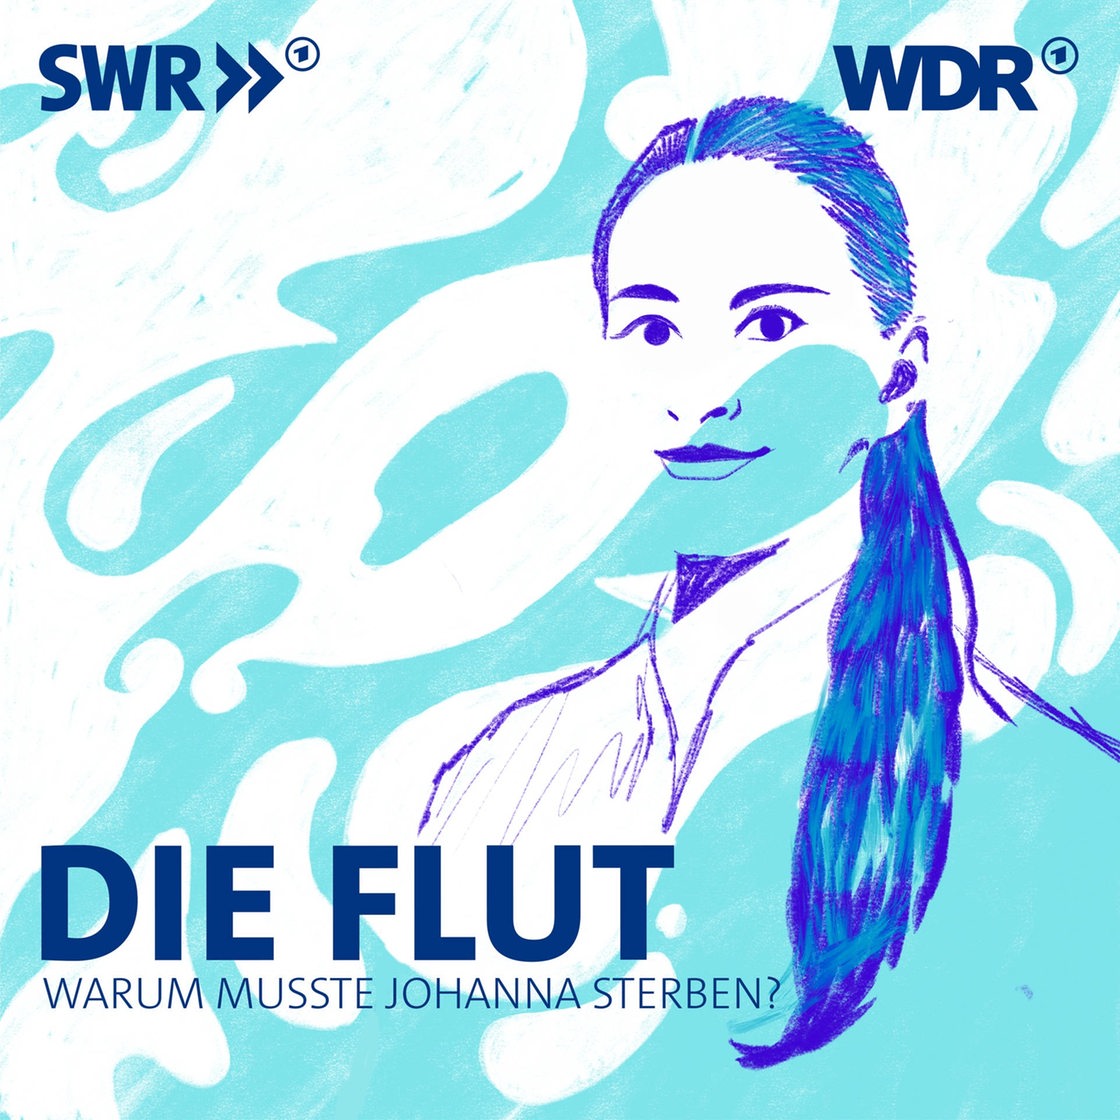 Podcast: Die Flut - Warum musste Johanna sterben?